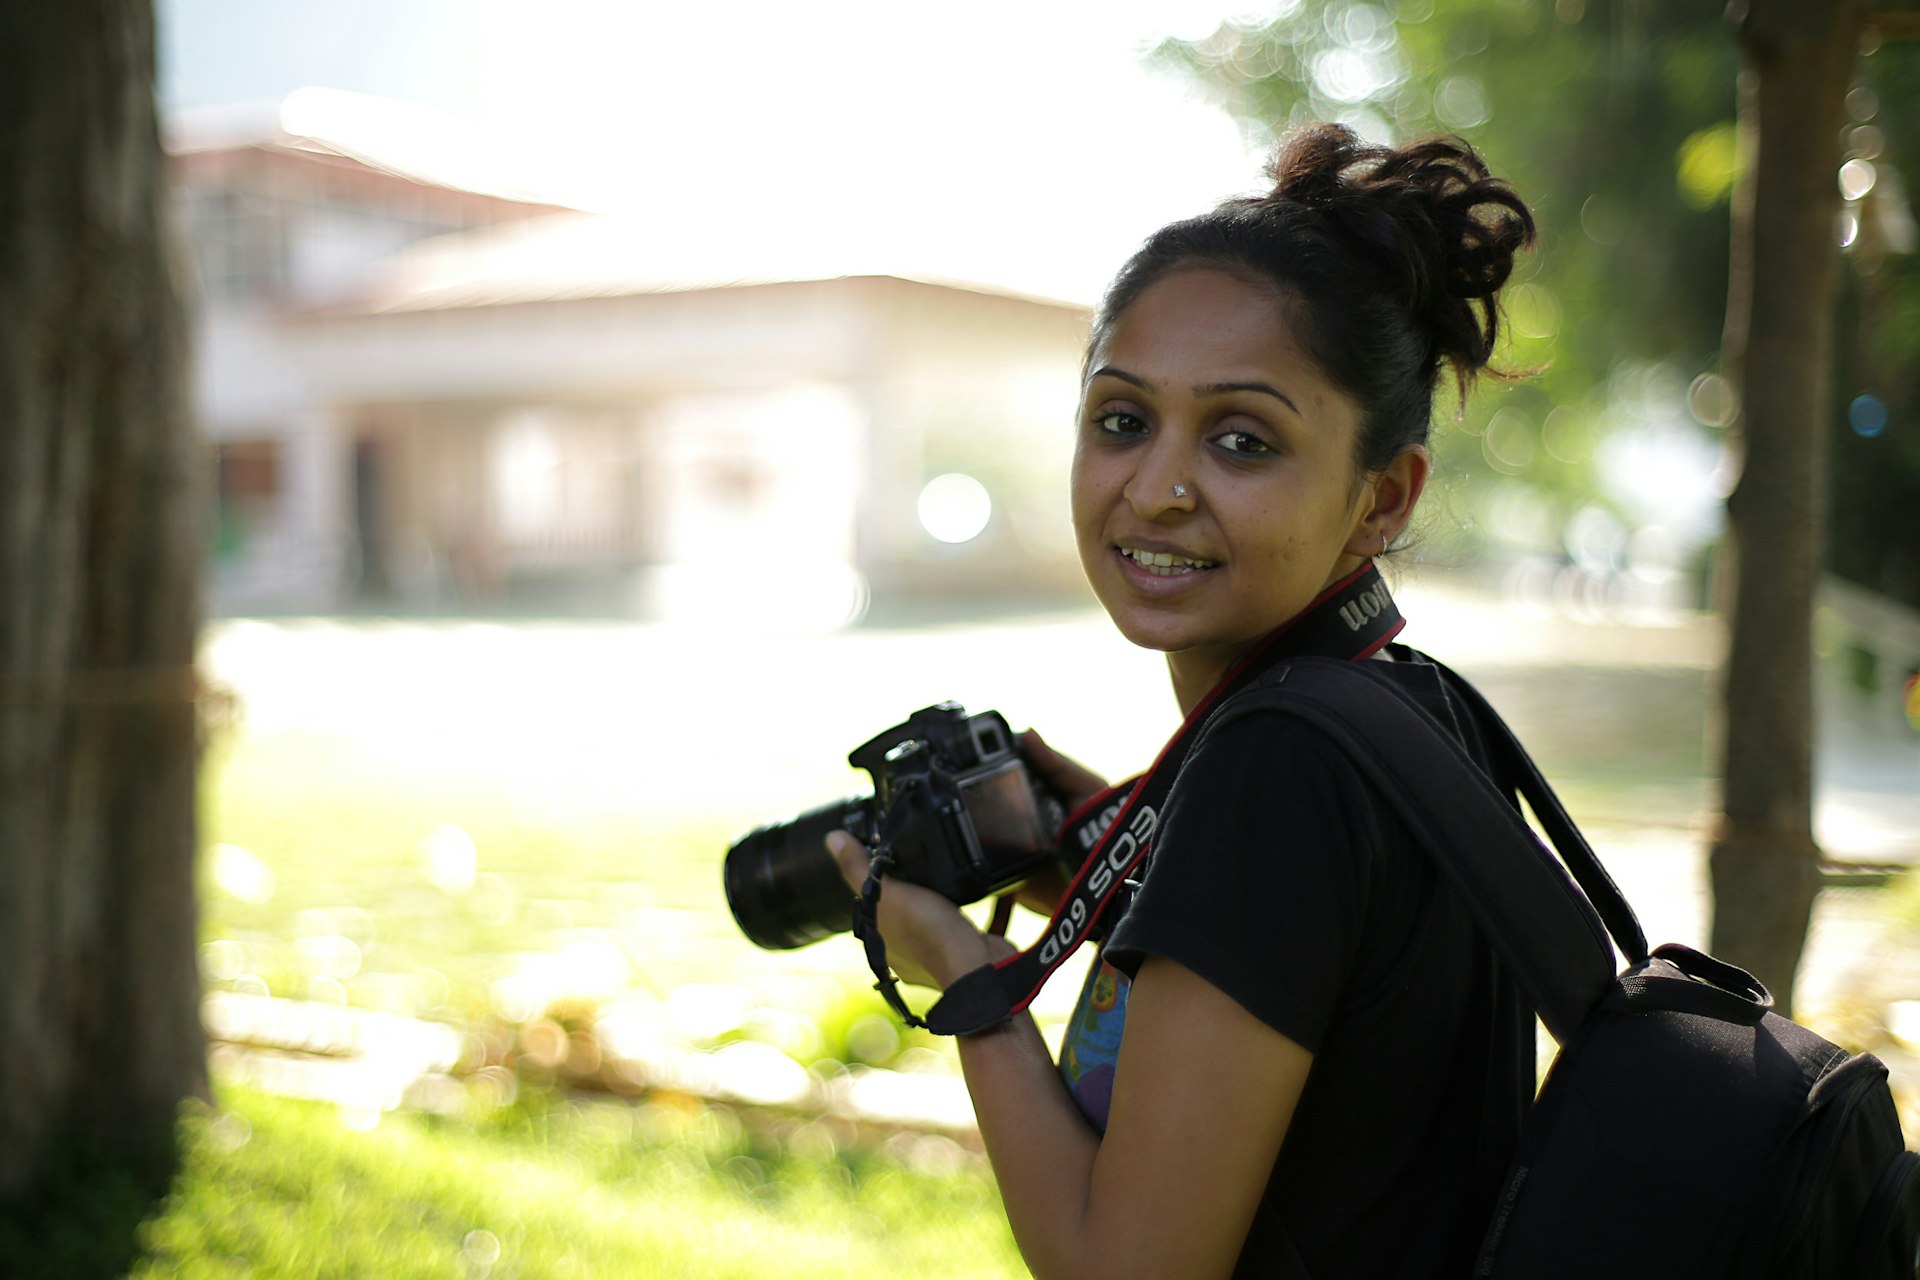 Supriya hard at work behind the lens © Supriya Sehgal / Lonely Planet